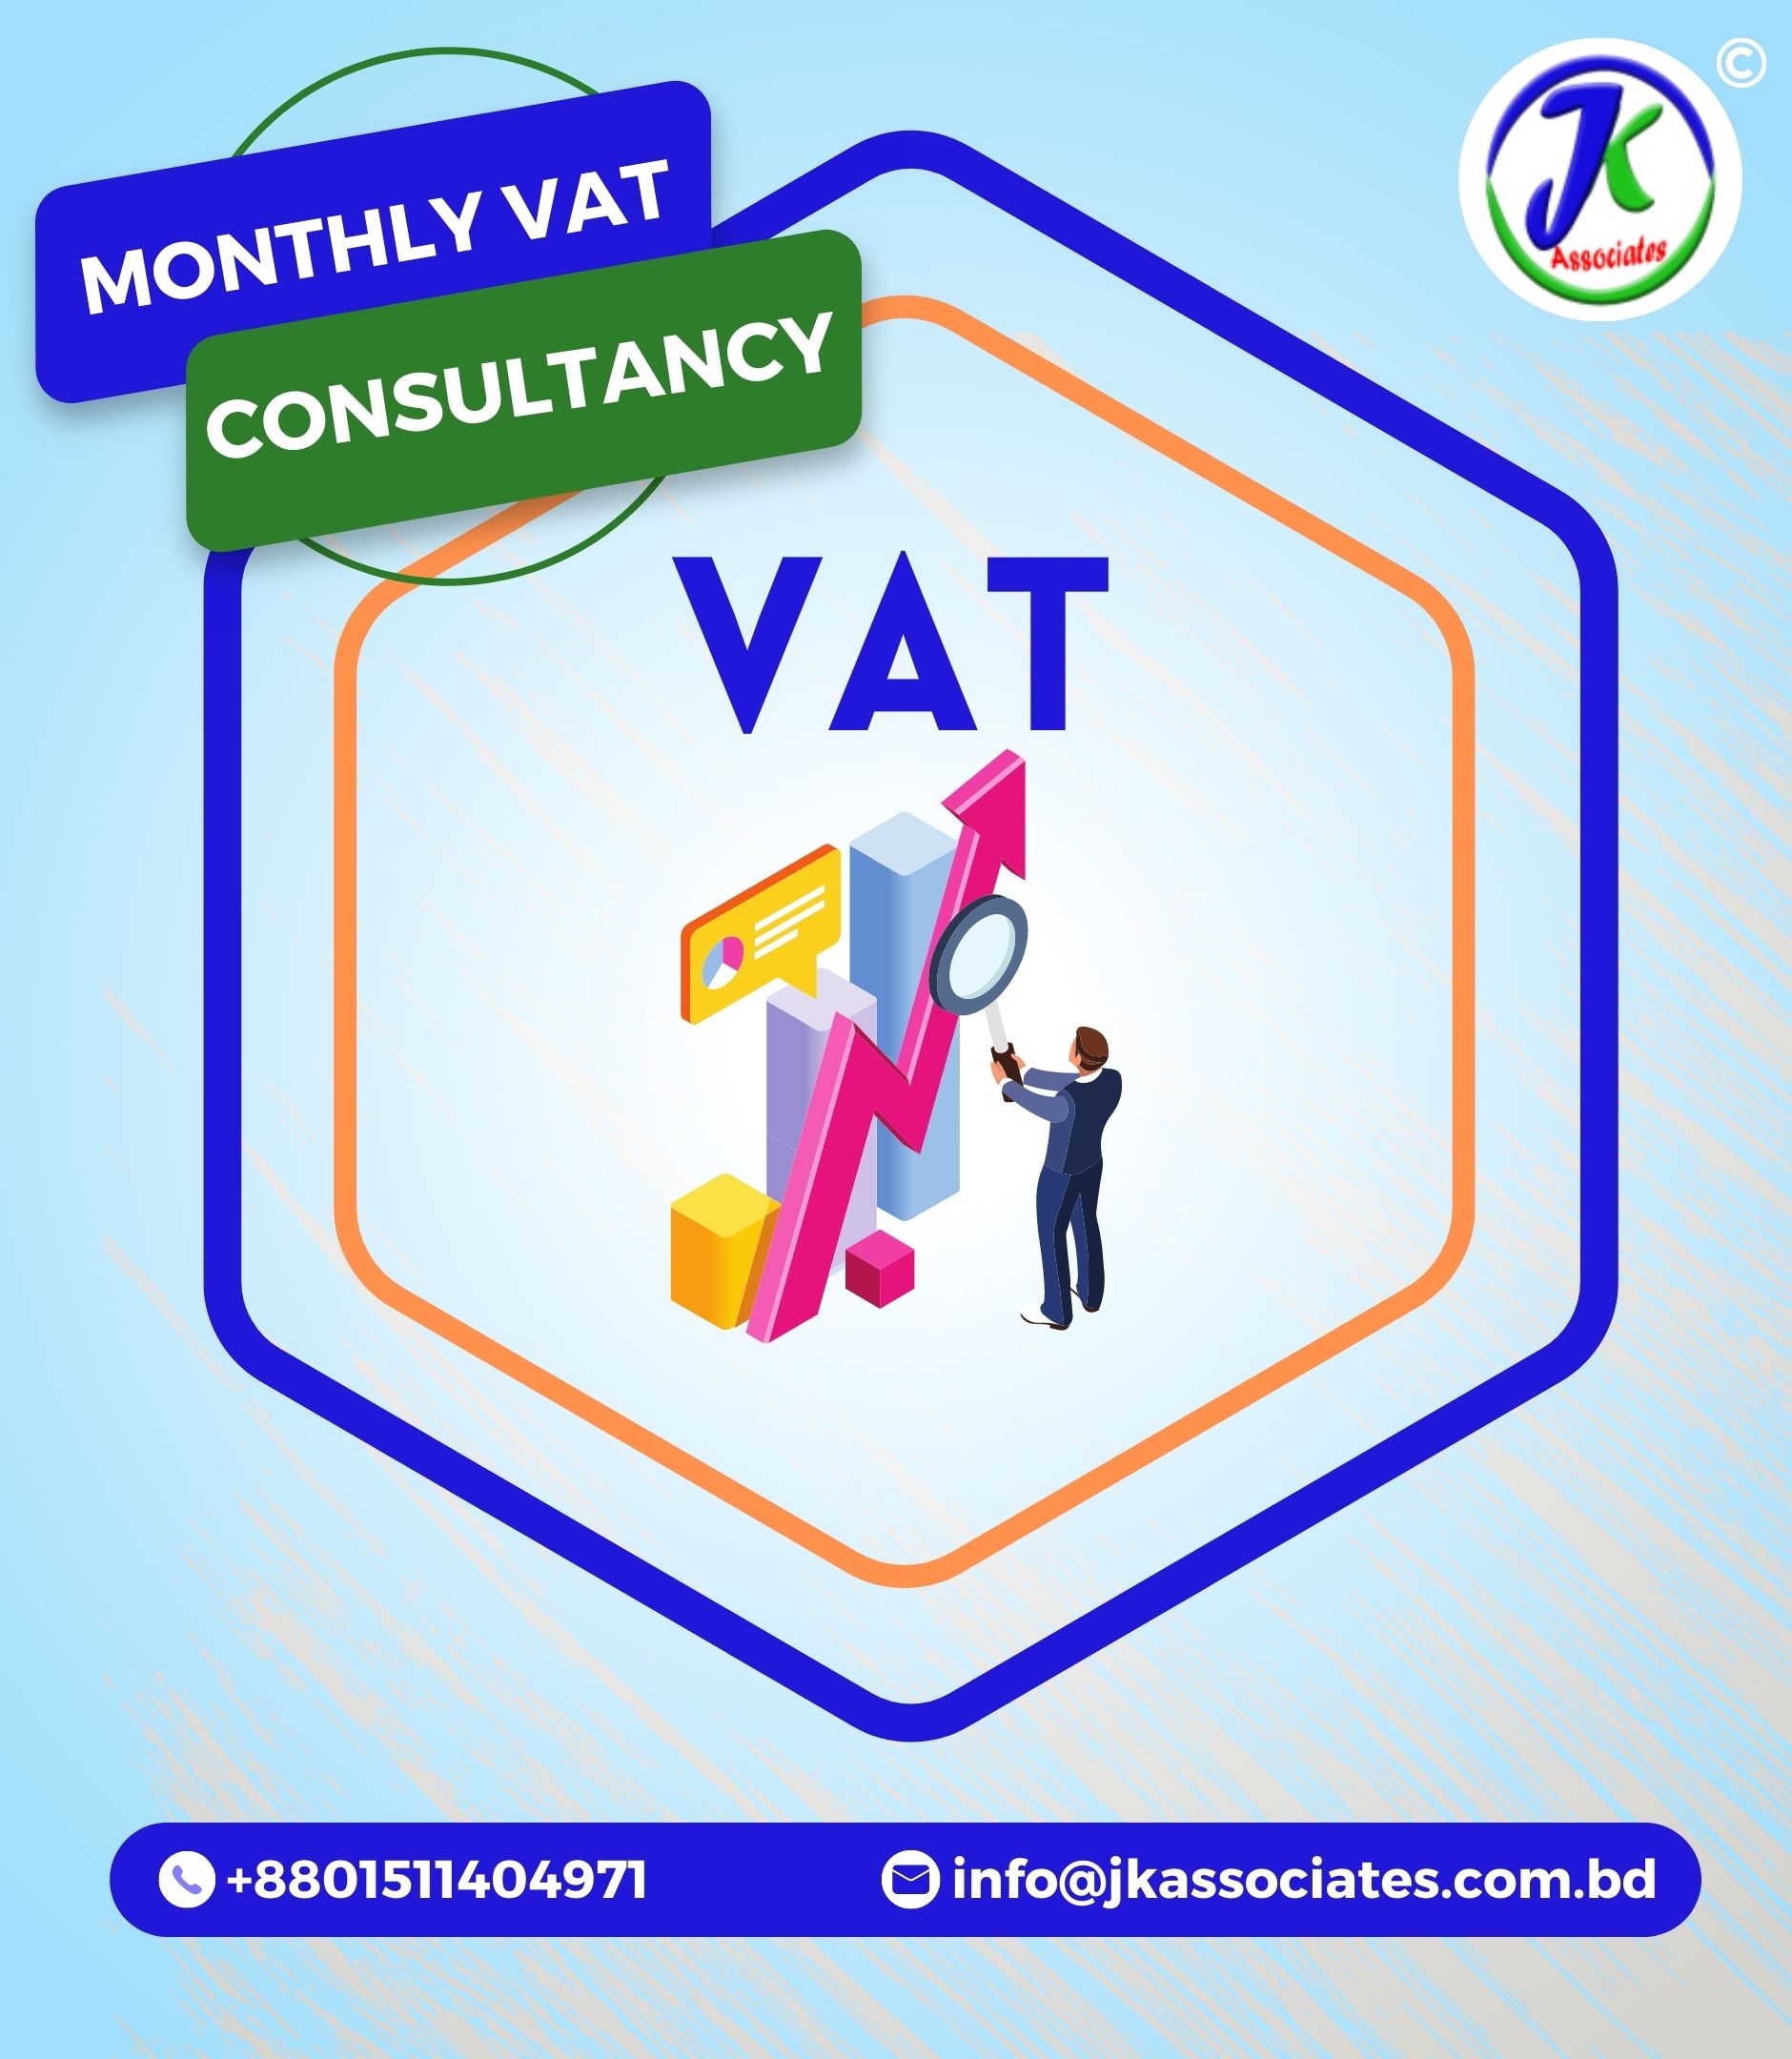 Monthly Vat Consultancy